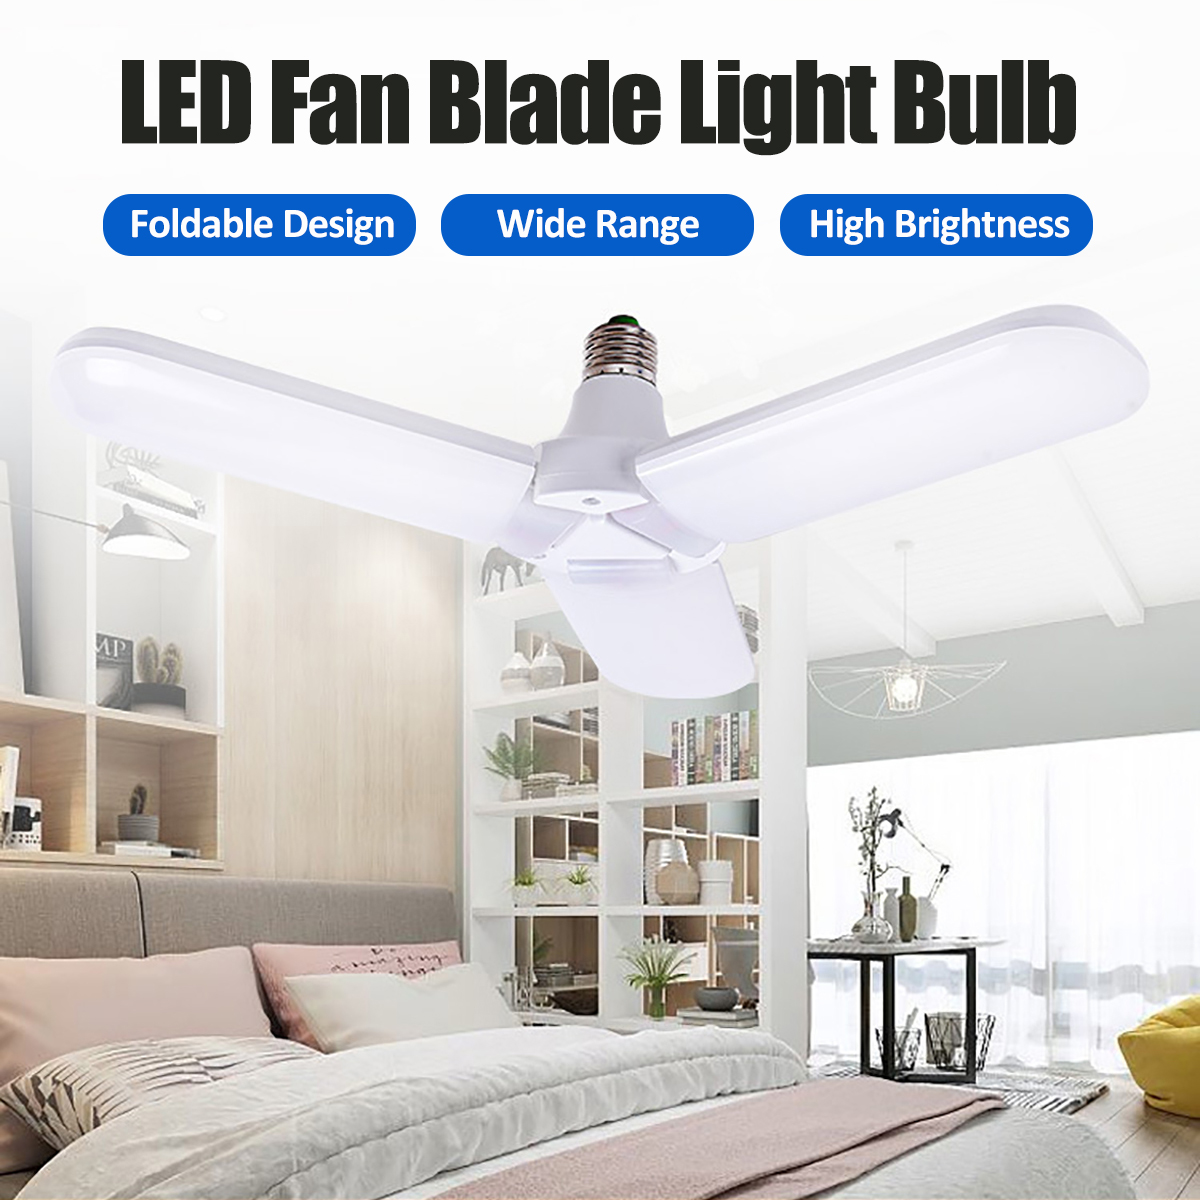 134-blade-E27-LED-Light-Bulb-Foldable-Fan-Blade-Light-Deformable-Ceiling-Lamp-Home-Living-Room-Inter-1861740-3